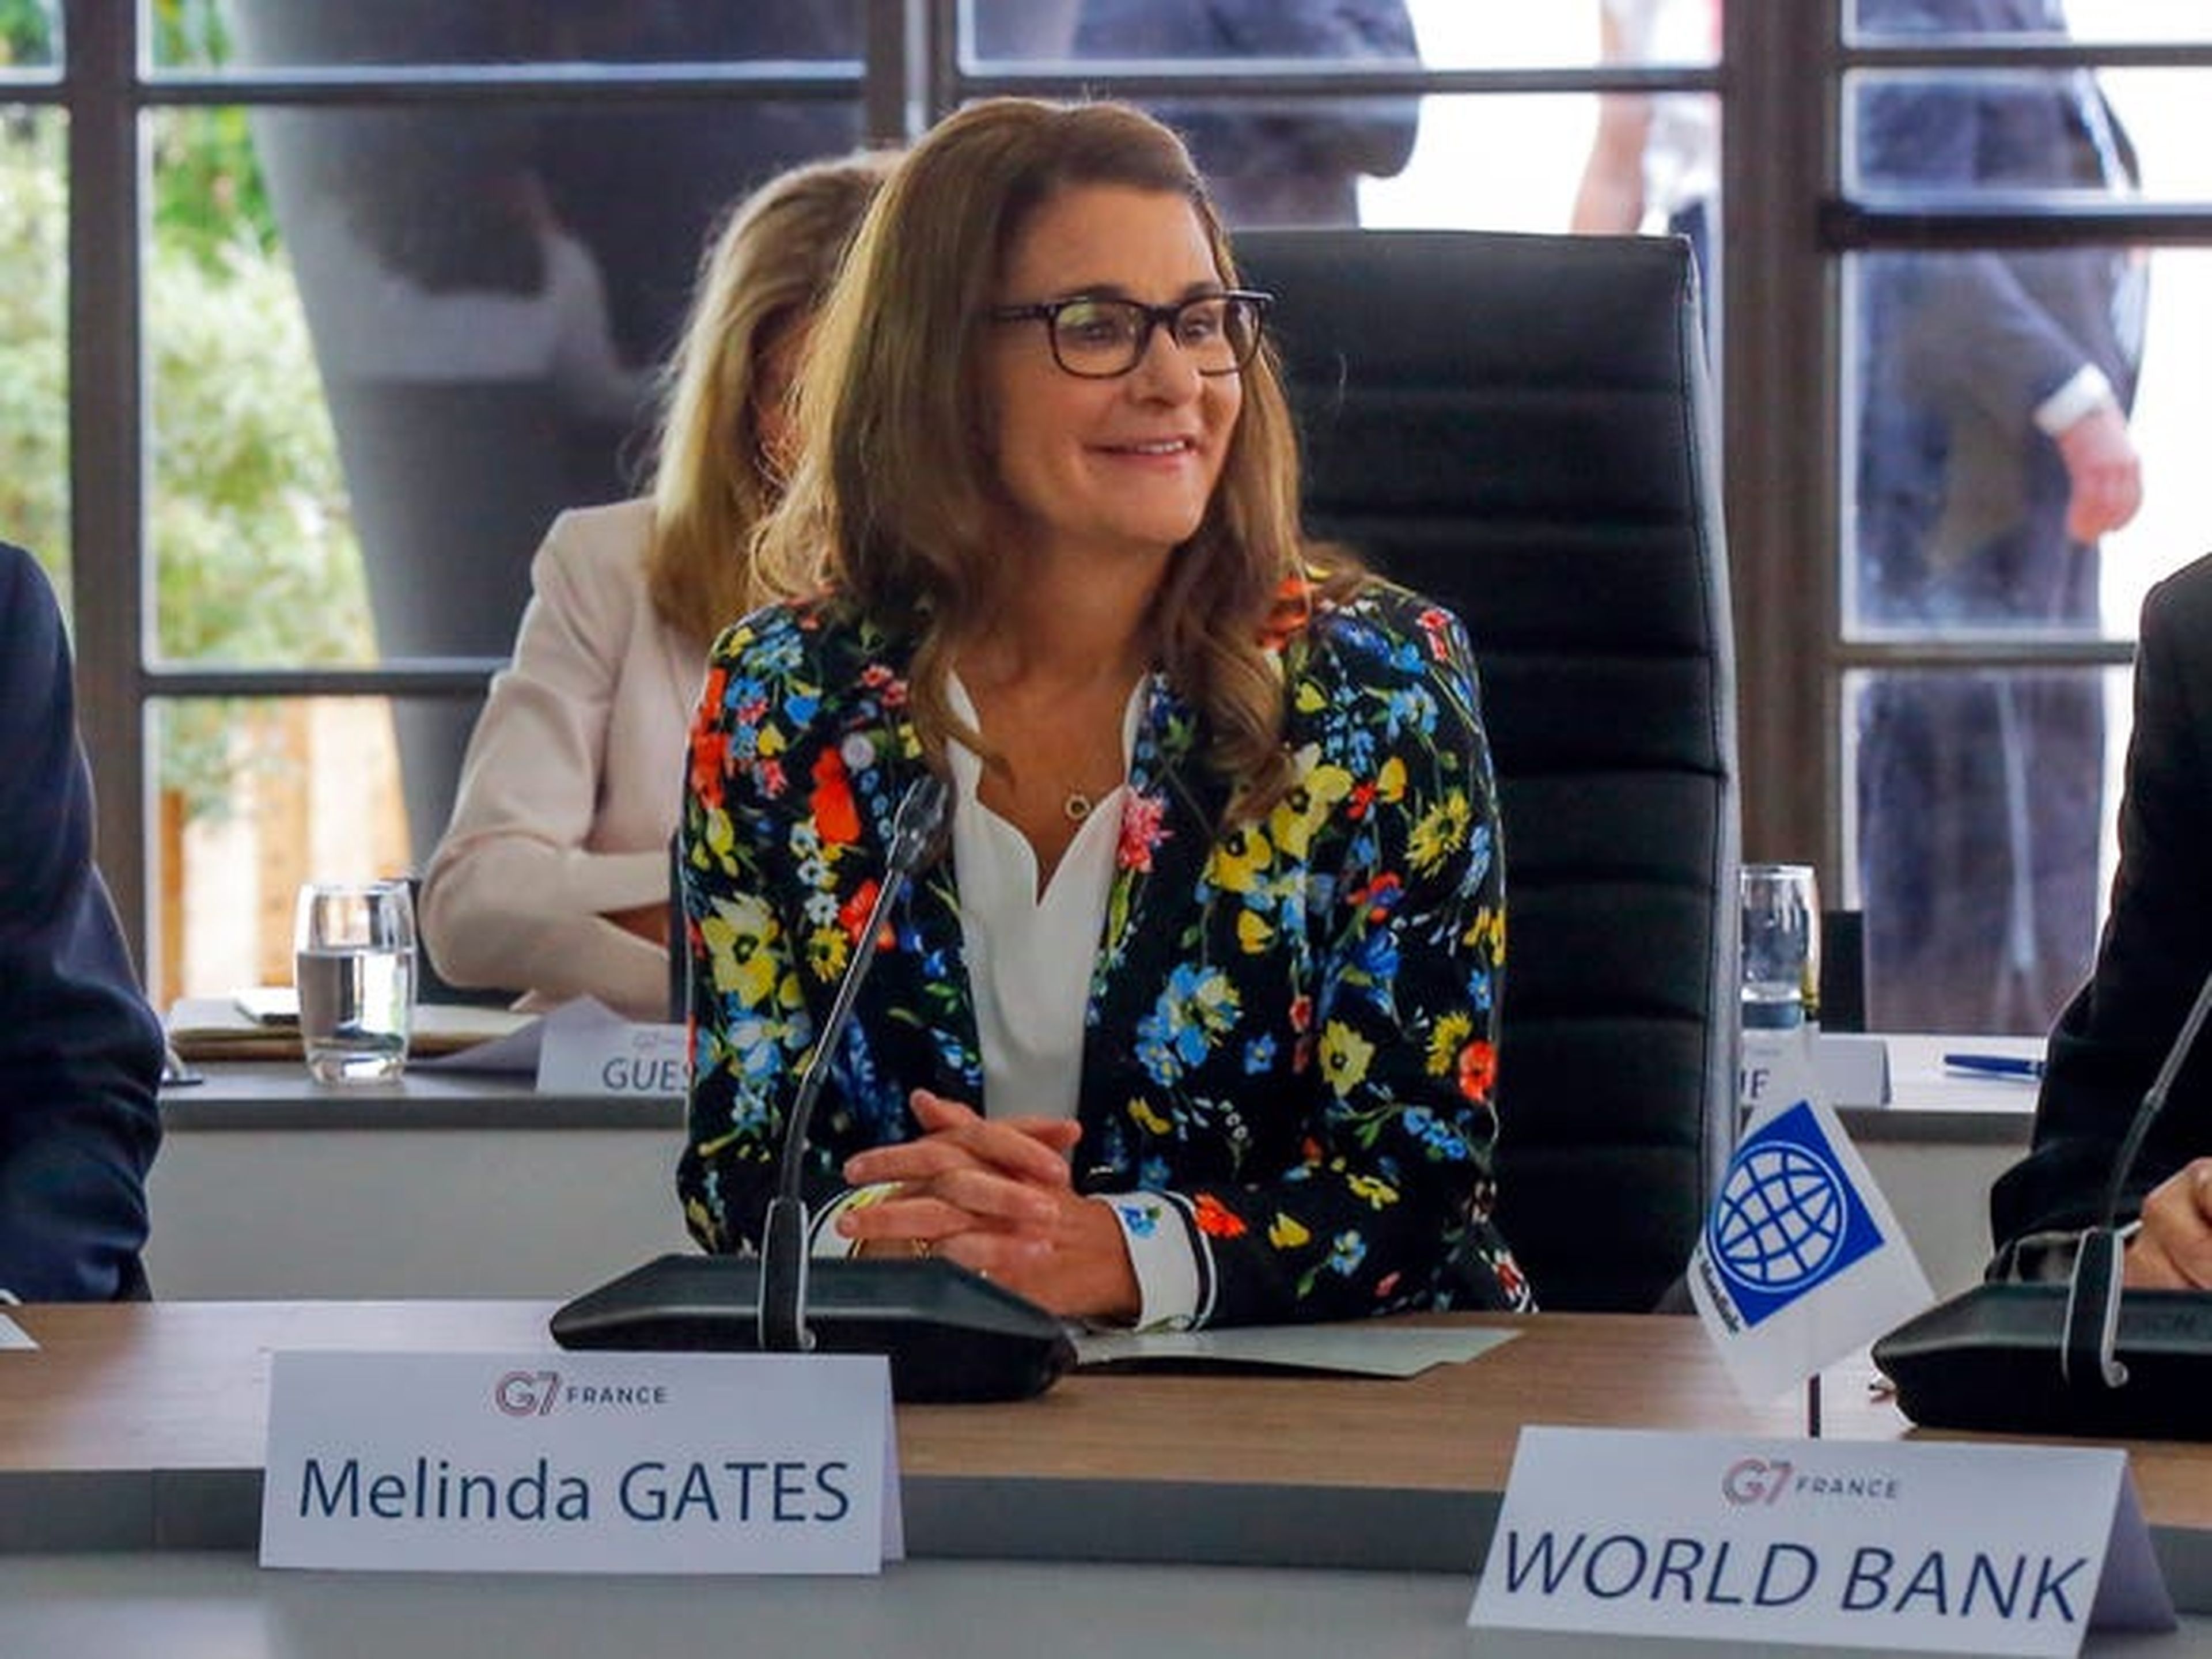 Melinda Gates asiste a una reunión en el G-7 Finance en Chantilly, al norte de París, el jueves 18 de julio de 2019.